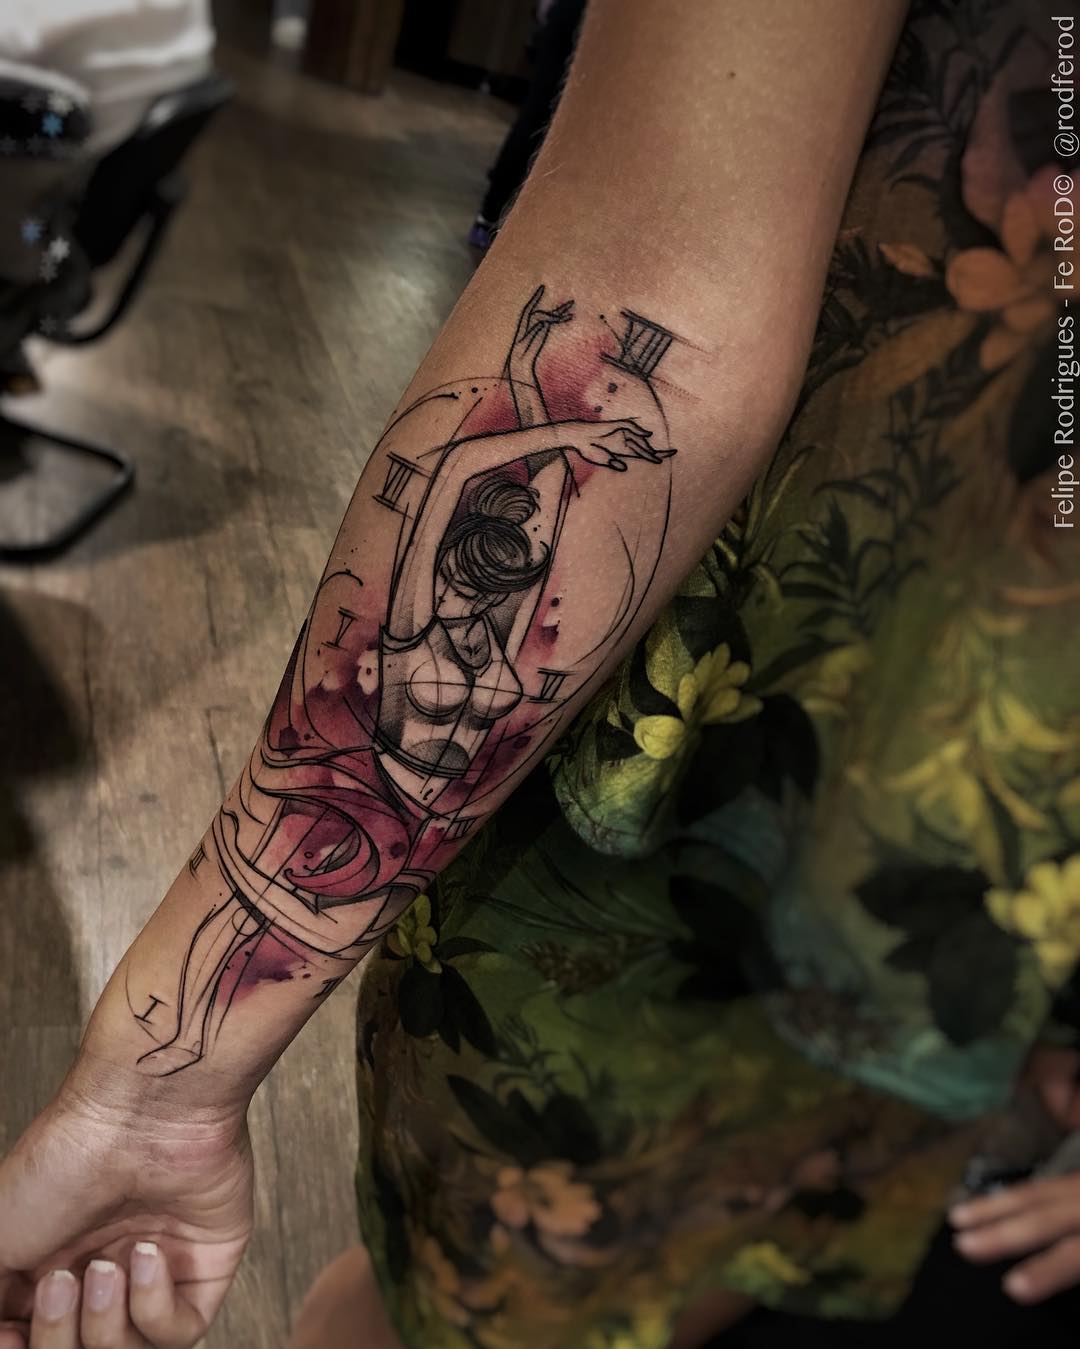 Galeria de Tatuajes del Artista Felipe Rodríguez